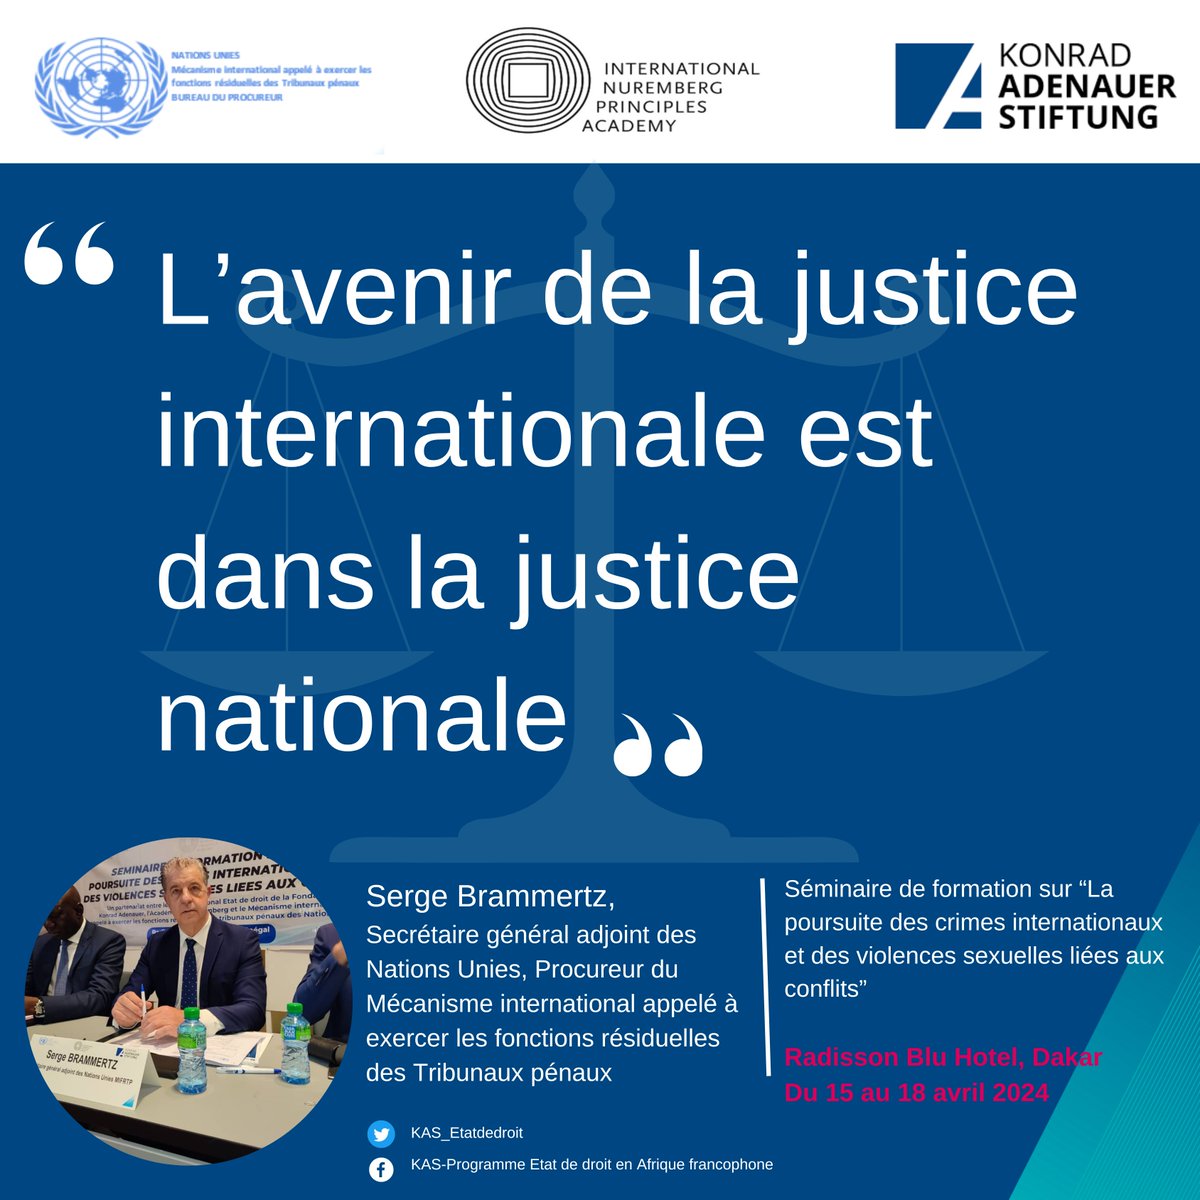 'L'avenir de la justice internationale est dans la justice nationale' - Séminaire de formation sur la poursuite des crimes internationaux et des violences sexuelles liées aux conflits